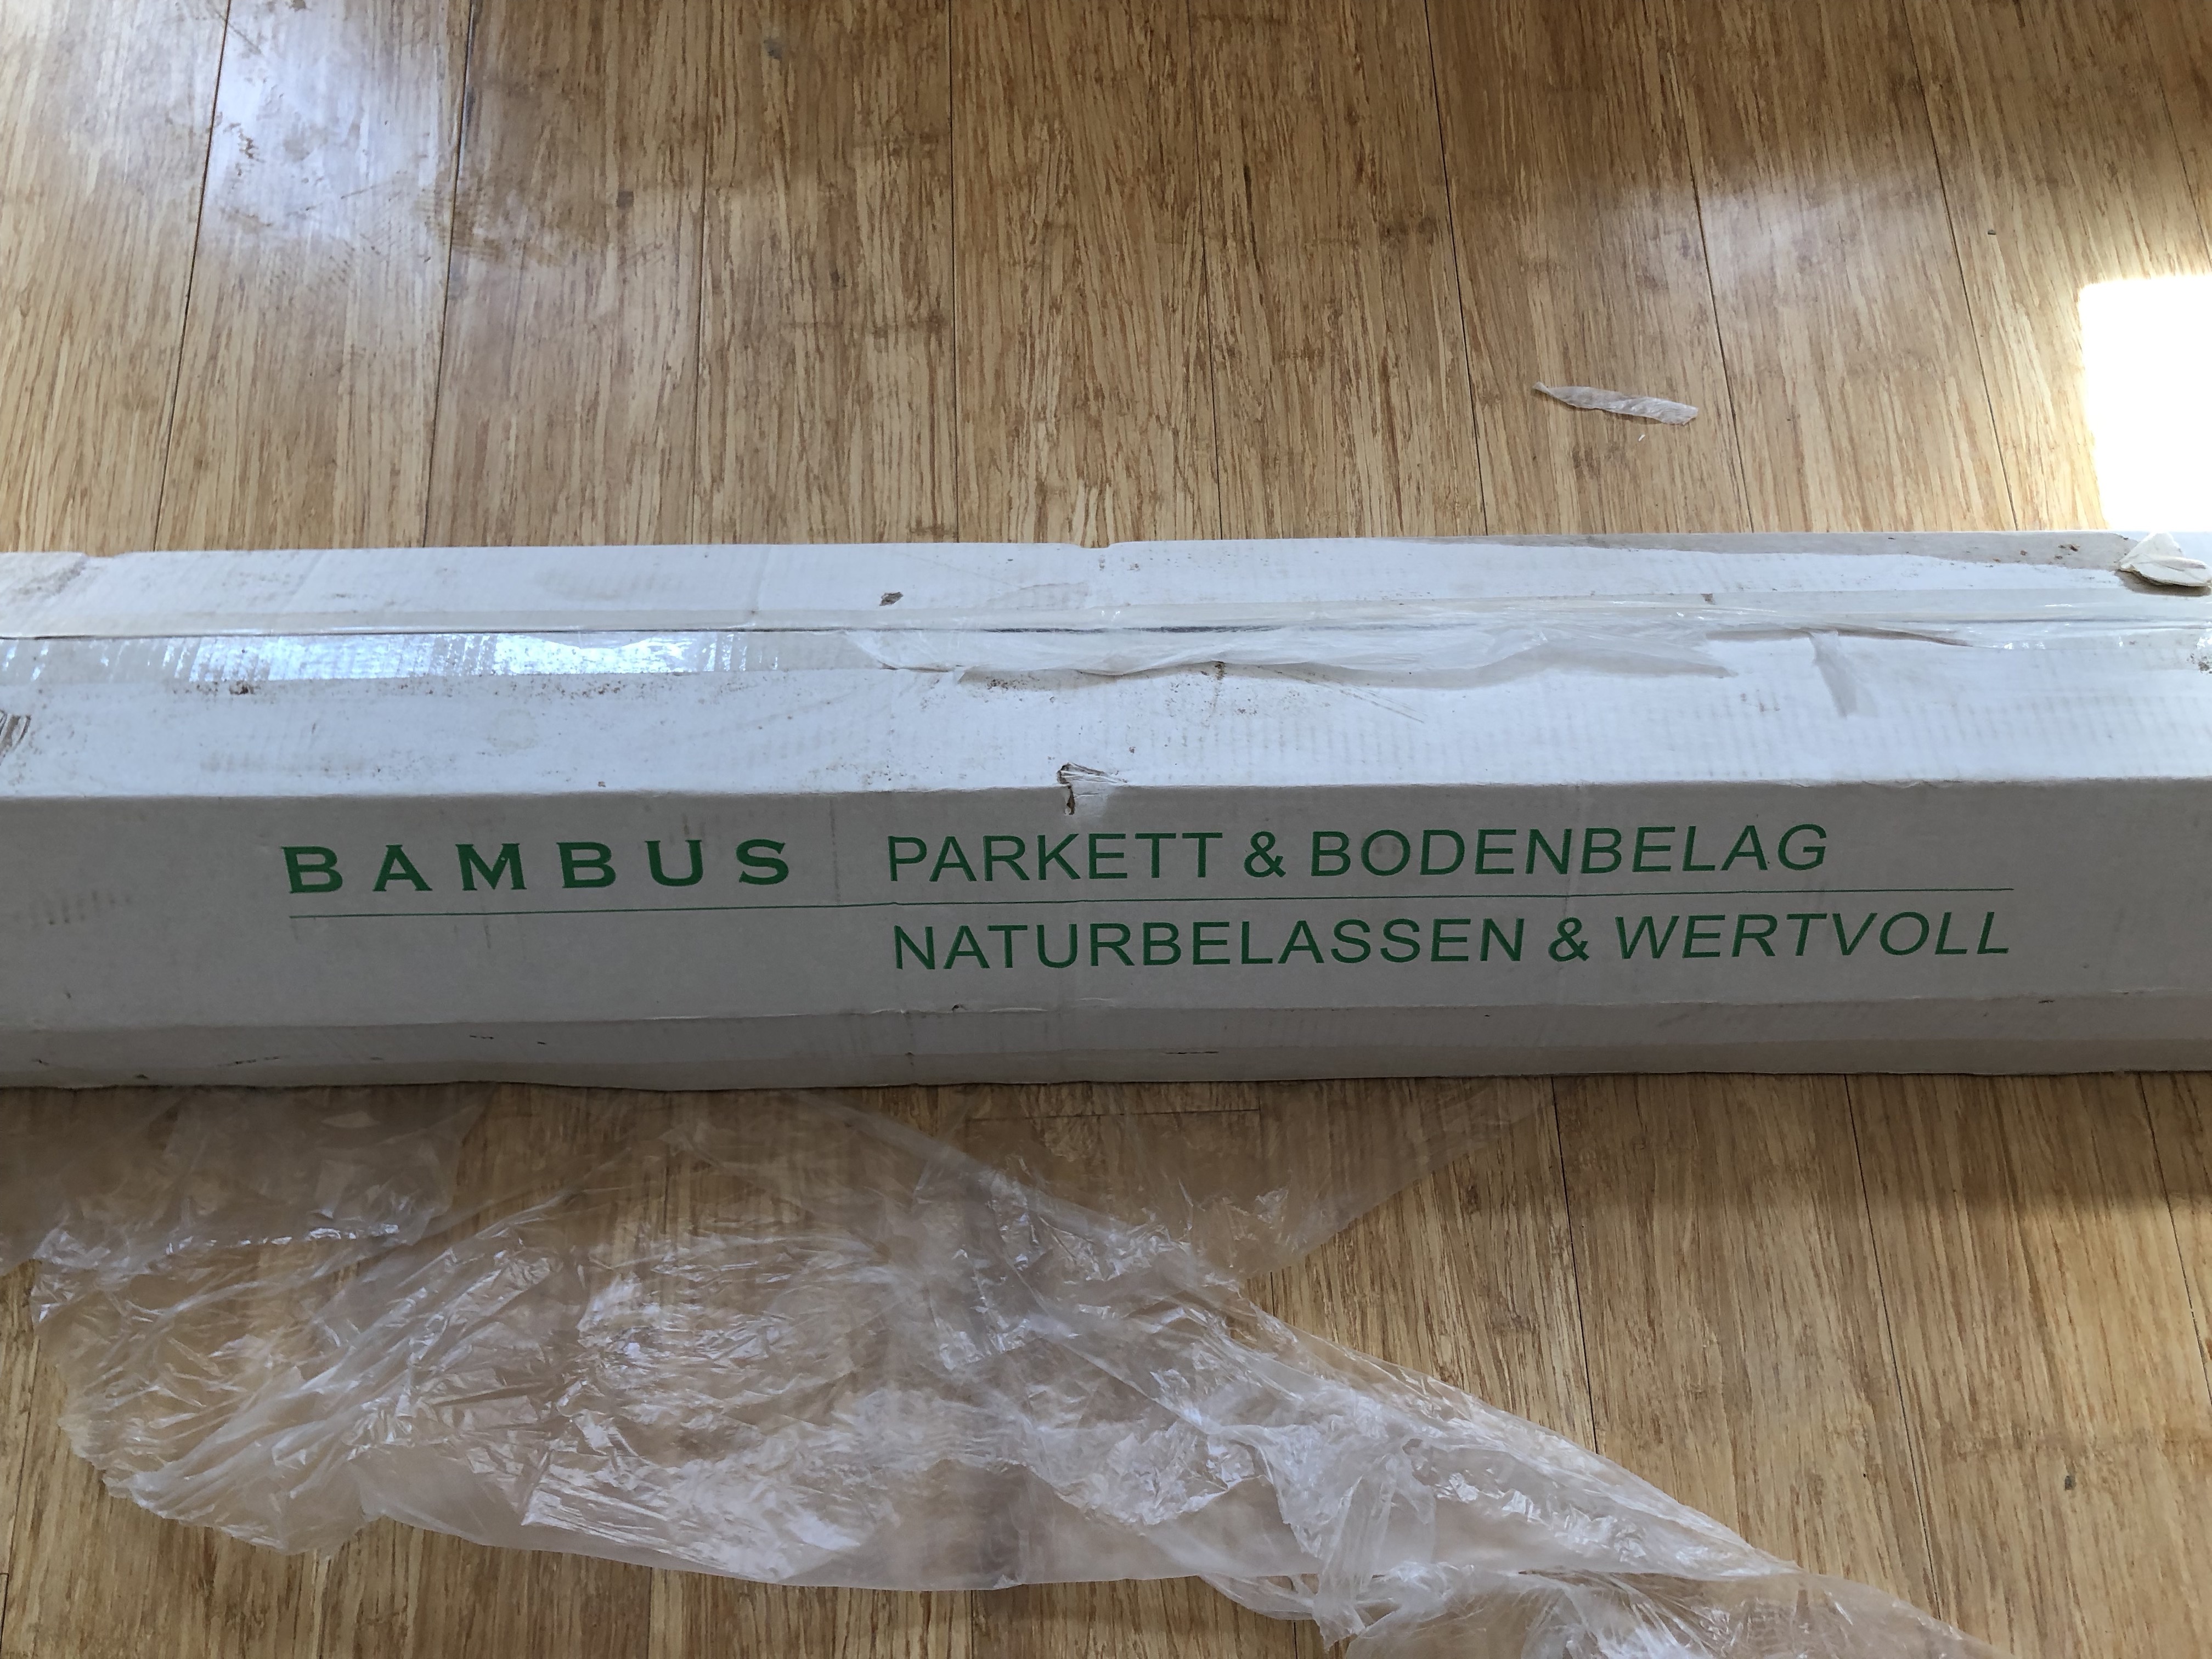 bambus-parkett-hersteller-wer-produziert-dieses-bambusparkett-290196-1.JPG